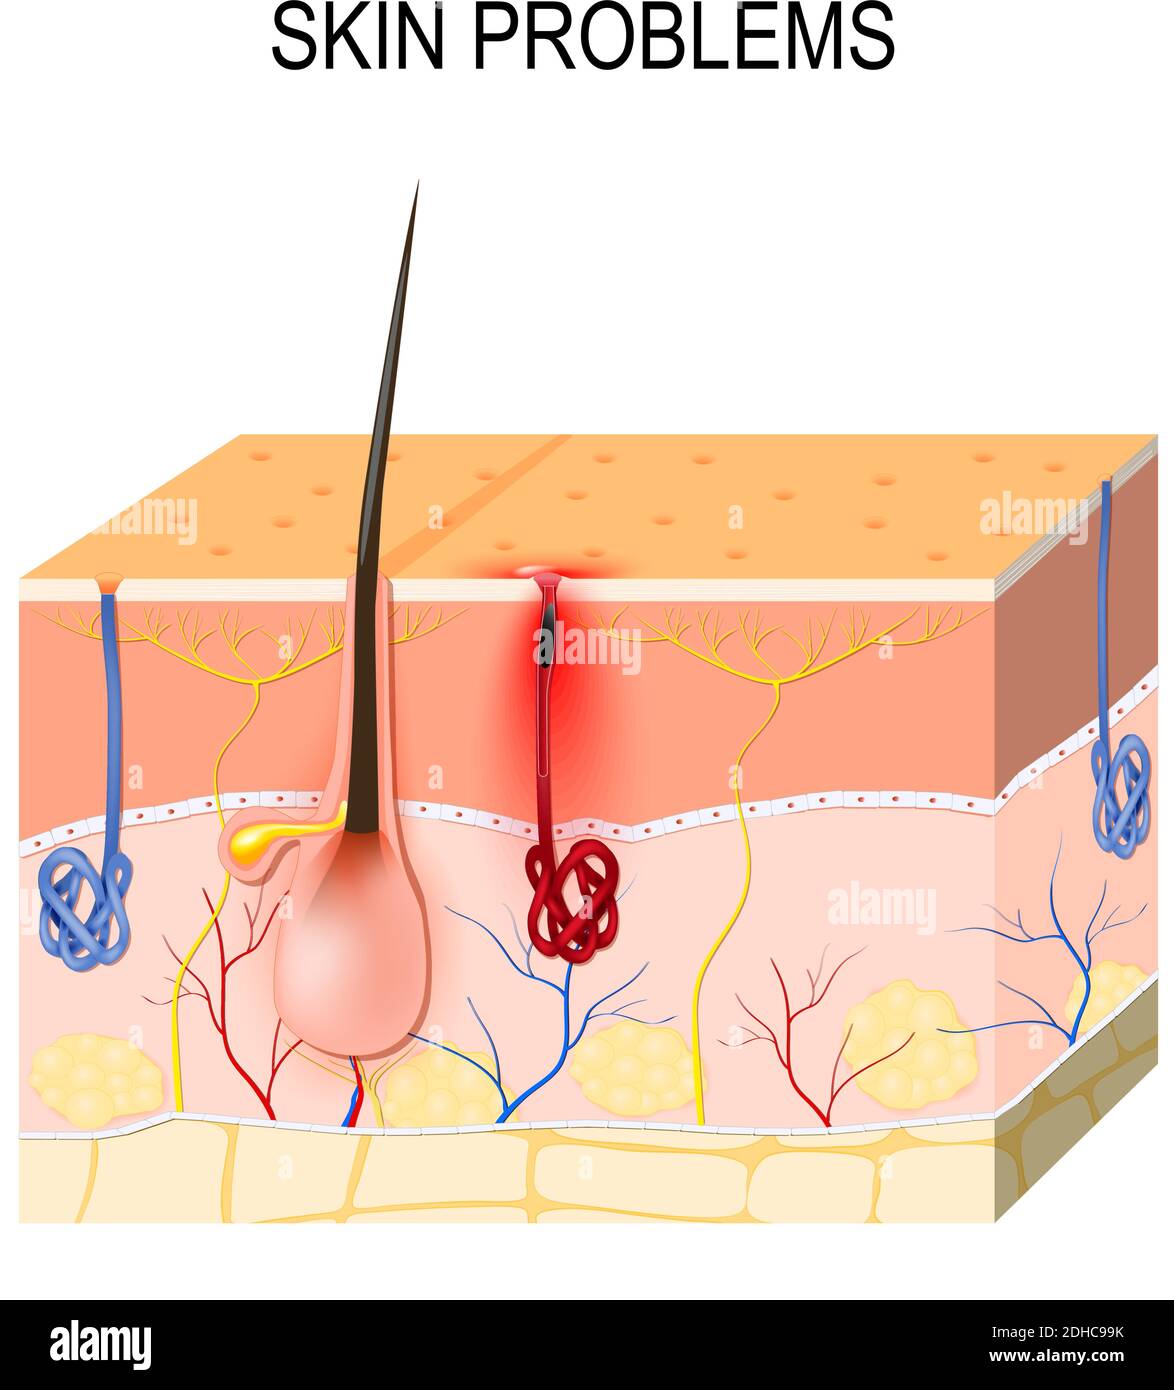 Problemi della pelle. Pori ostruiti. Il sebo e le cellule morte della pelle nei pori ostruiti favoriscono la crescita di alcuni batteri (Propionibacterium Acnes) Illustrazione Vettoriale